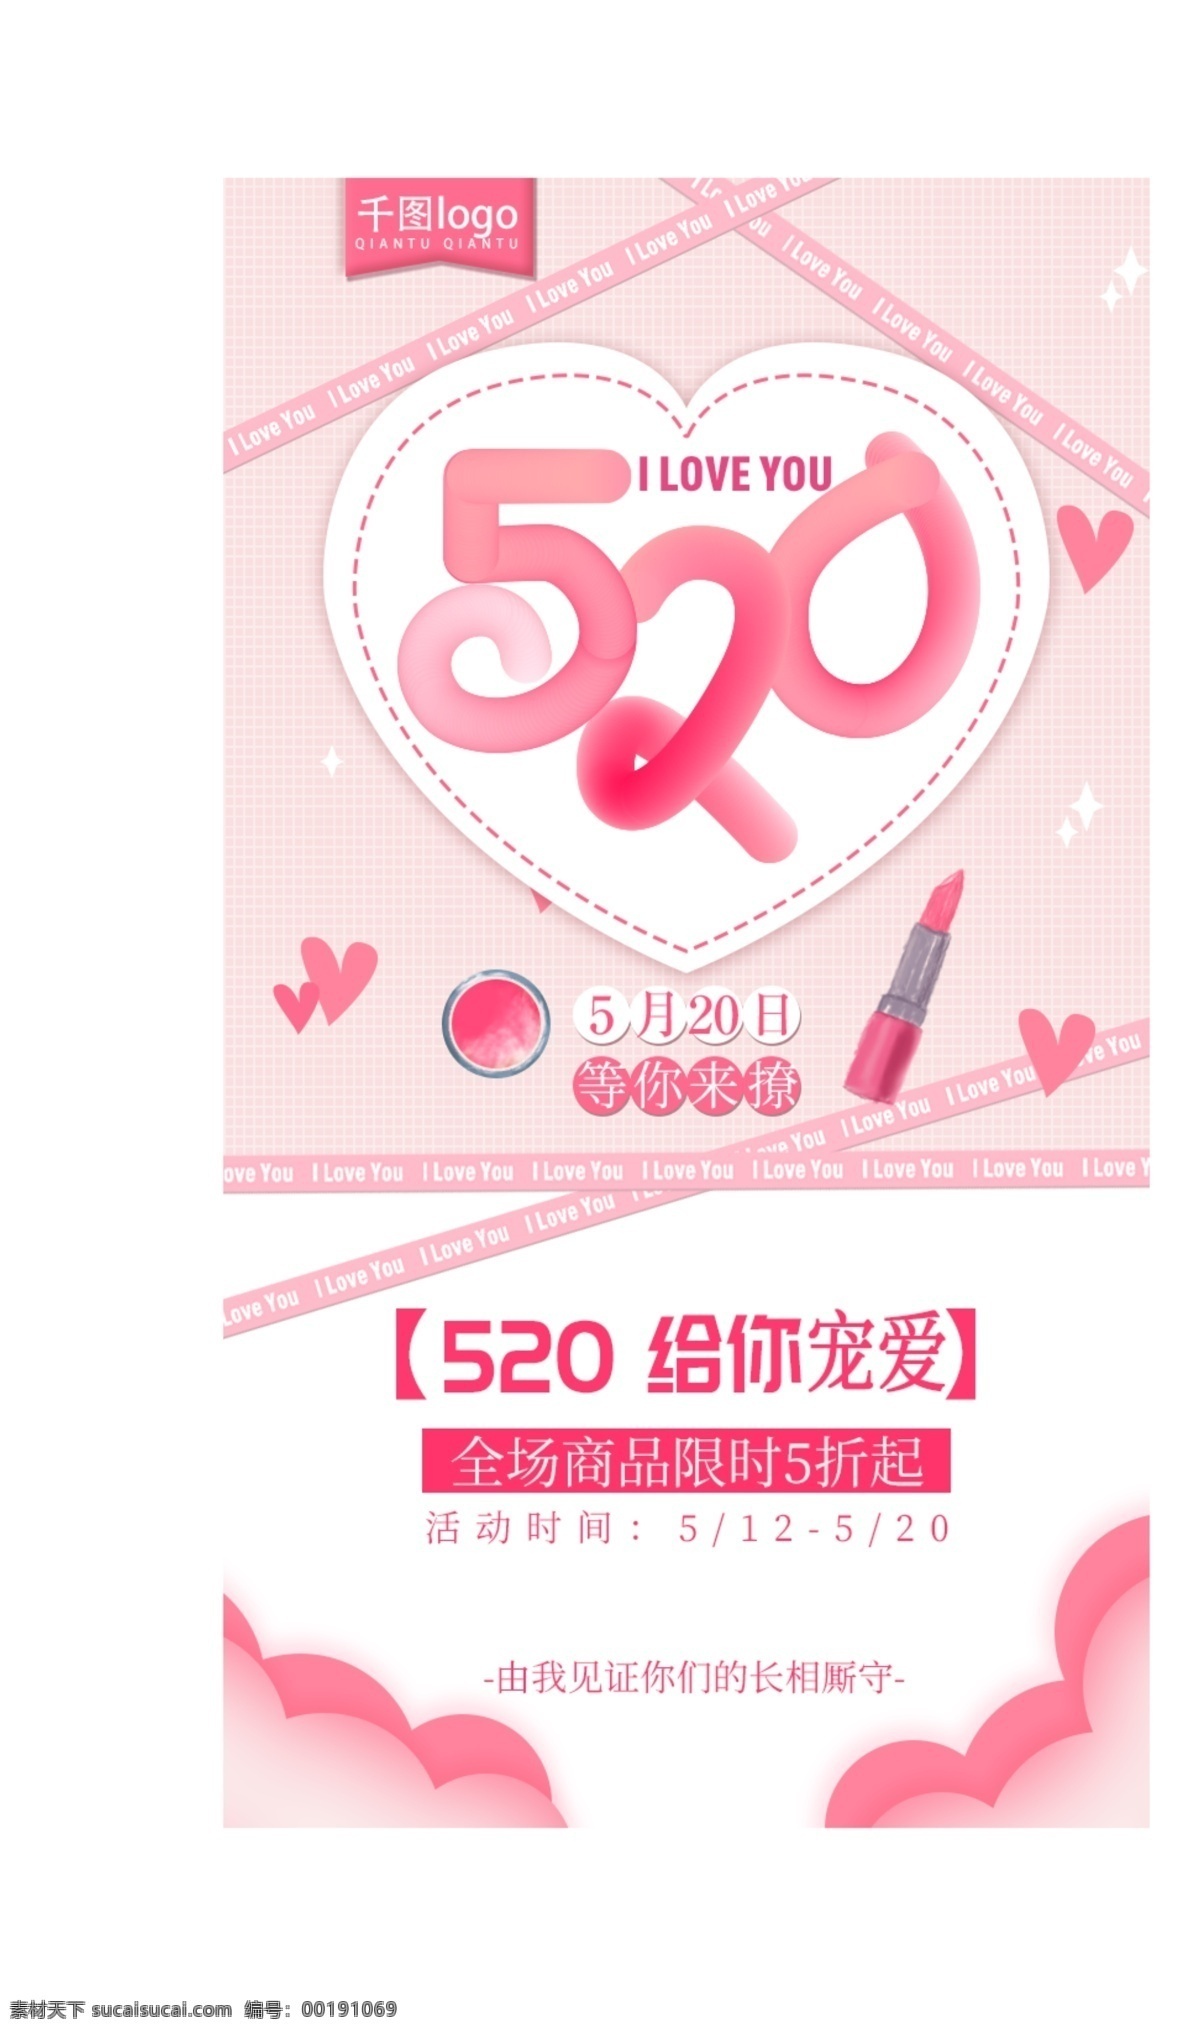 美 妆 产品促销 海报 520 美妆 促销 限时特惠 粉色 清新